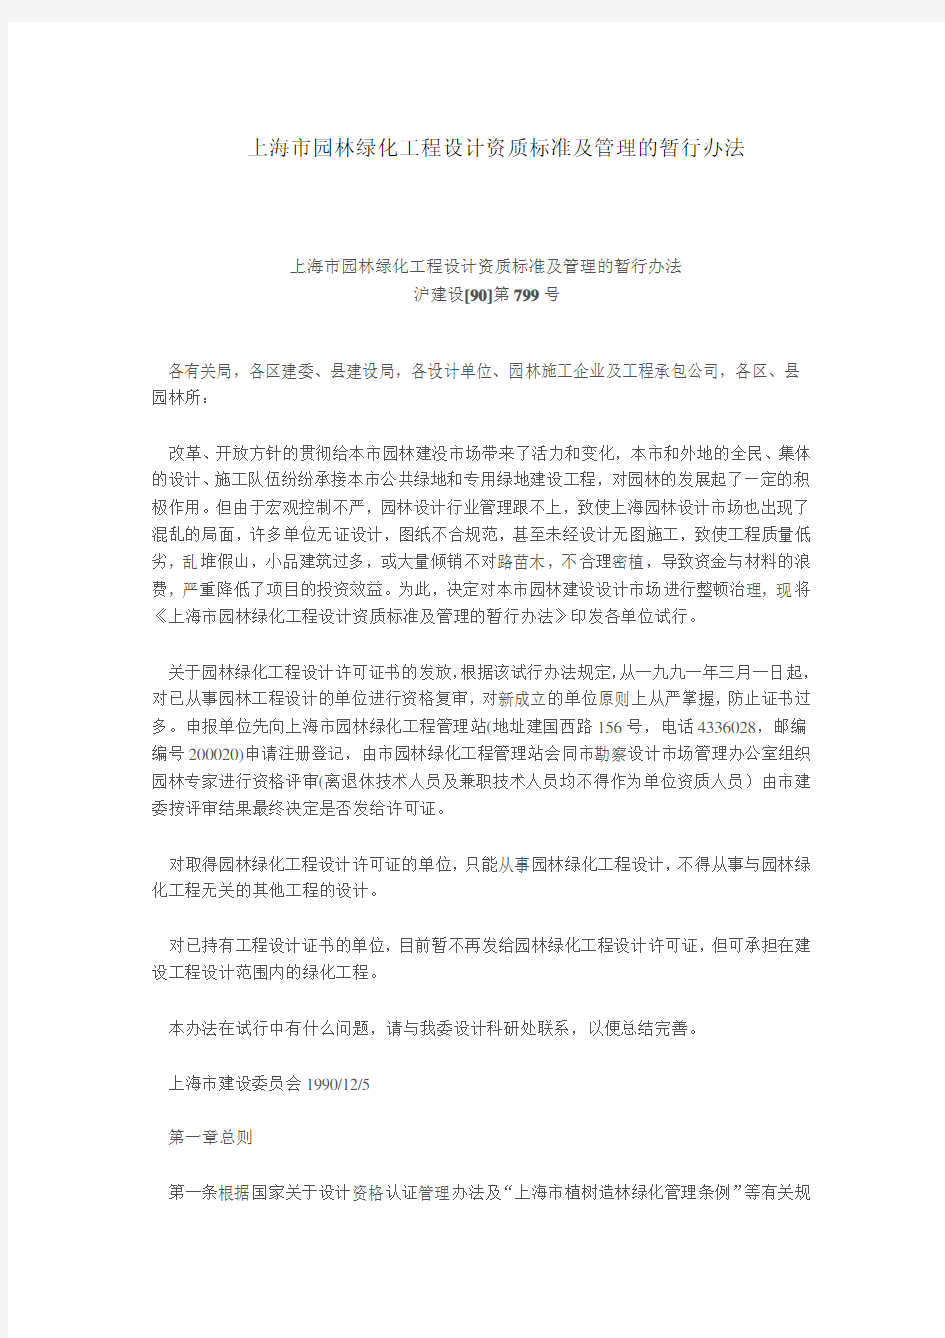 上海市园林绿化工程设计资质标准及管理的暂行办法